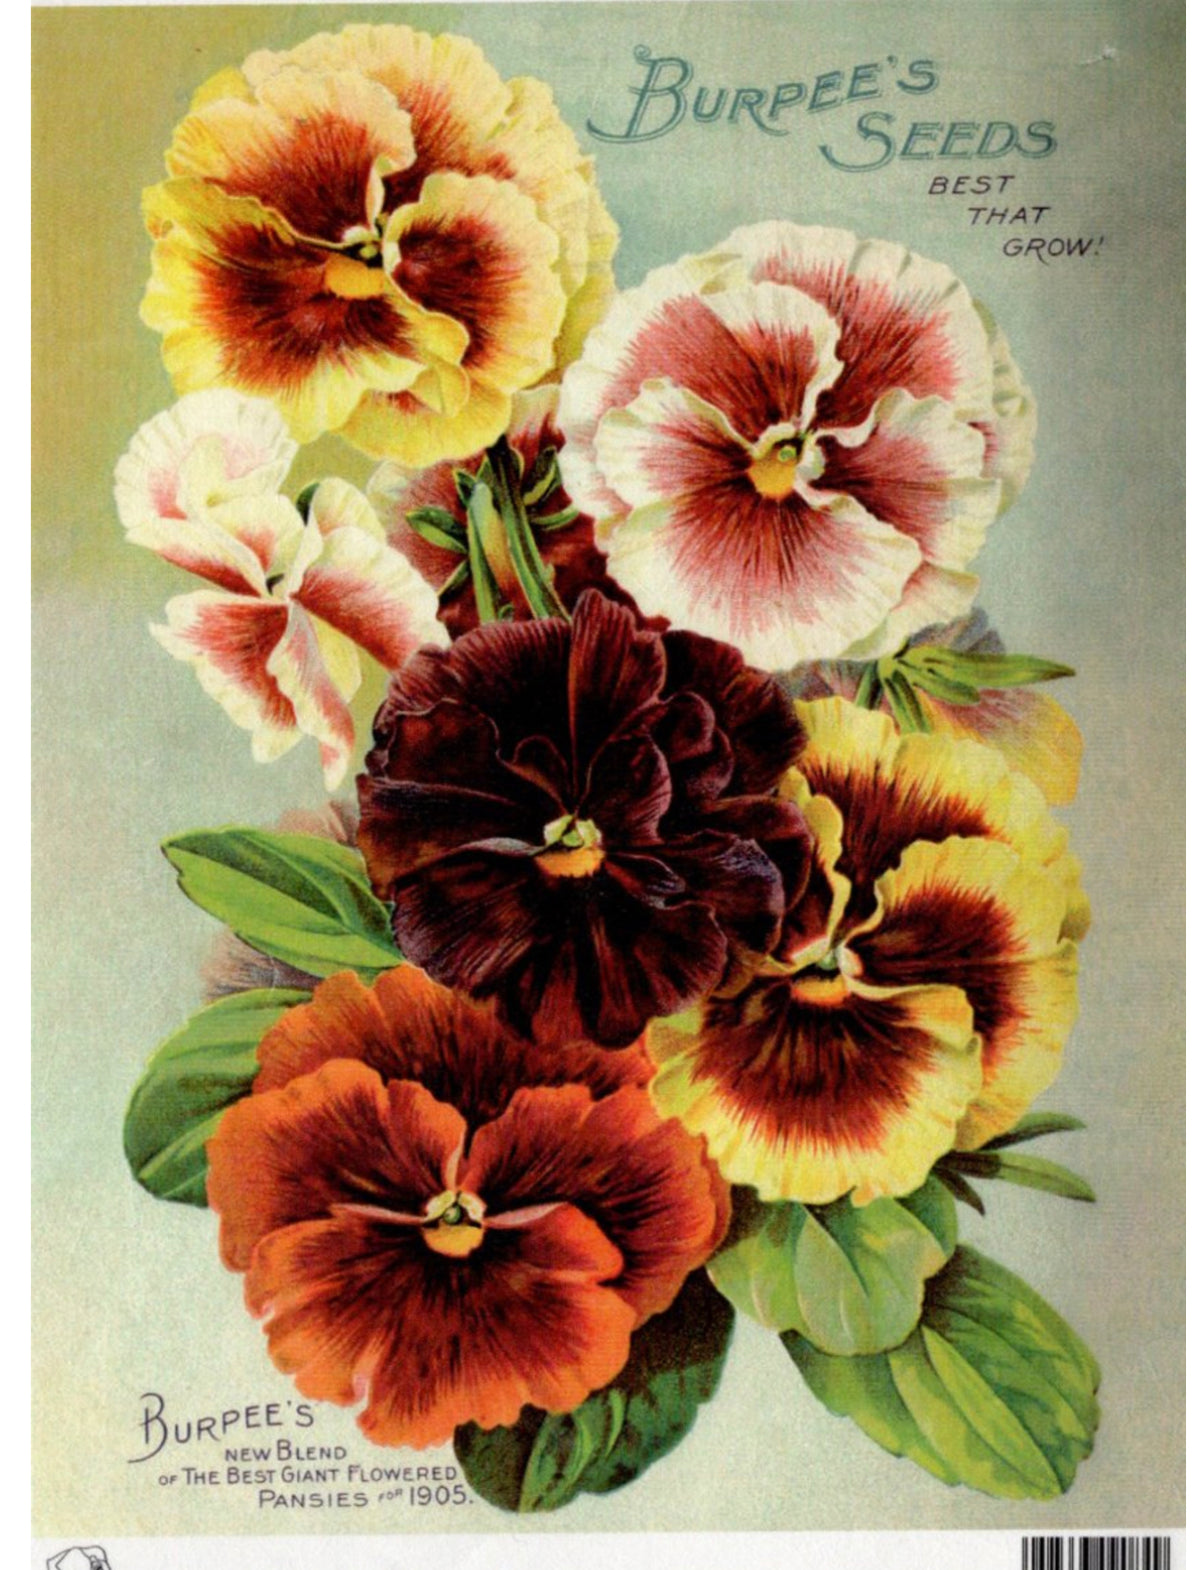 Burpees Seeds Pansies 1905